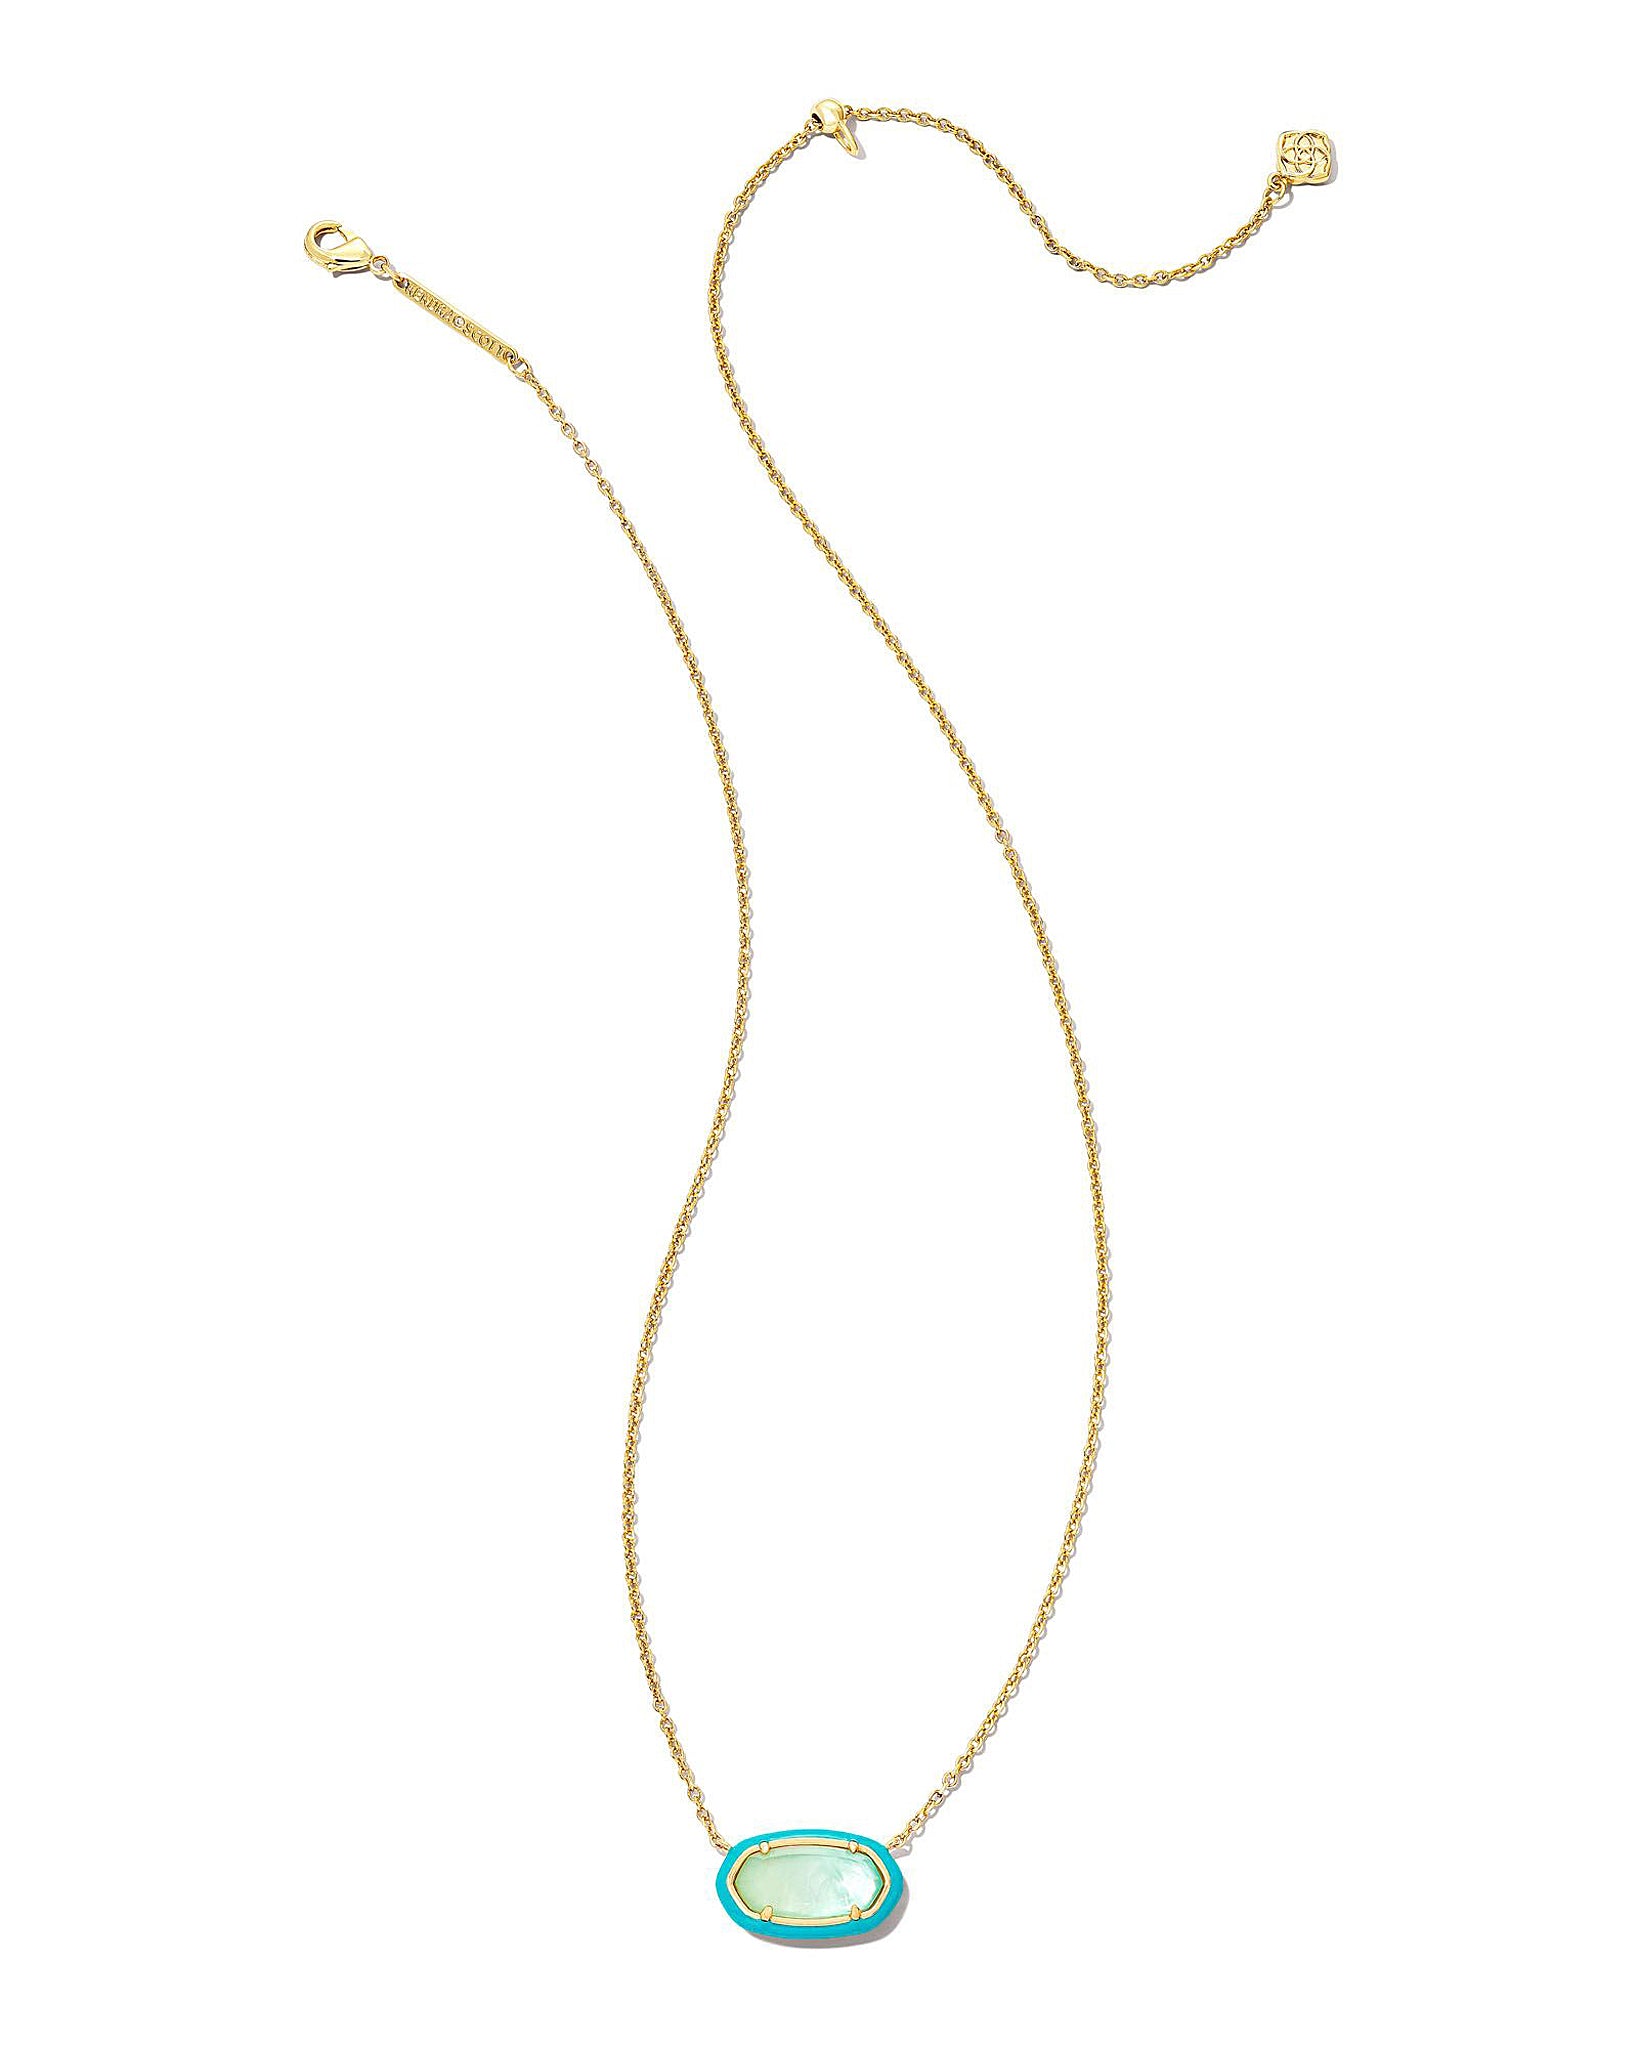 Kendra Scott Enamel Framed Elisa Oval Pendant Necklace in Sea Green Chrysocolla